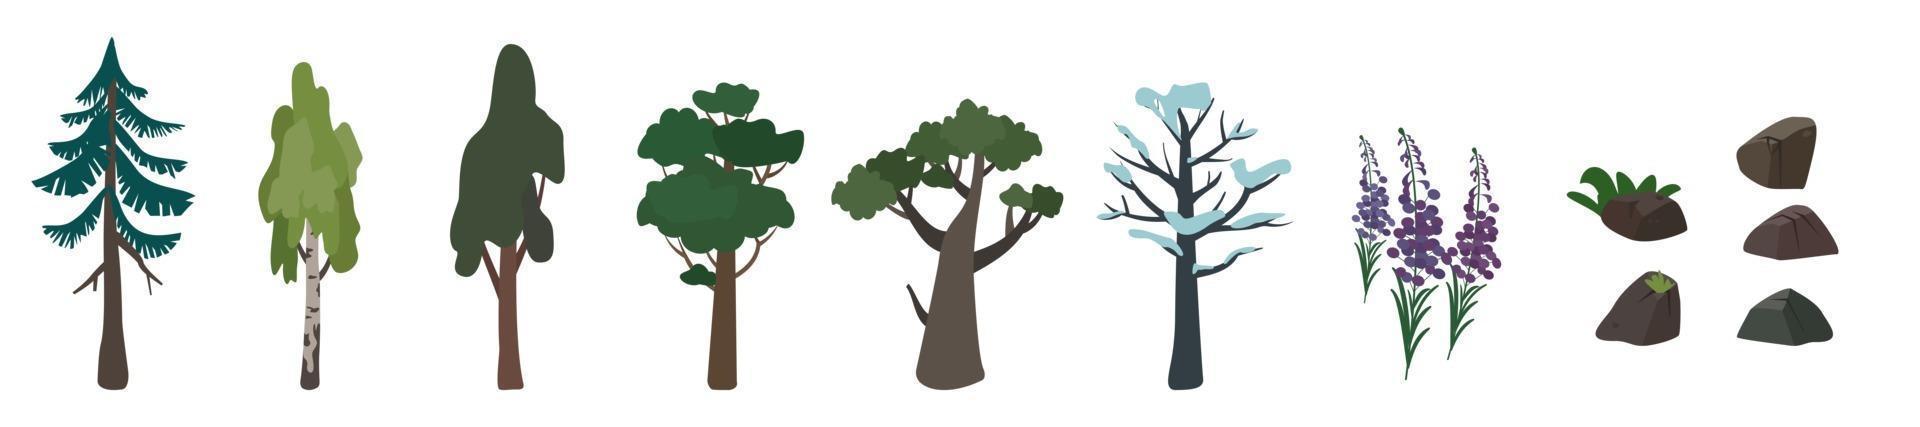 Reihe von Symbolen von Bäumen Birke, Eiche, Fichte und ihrer Silhouette. grünes und braunes Natursymbol vektor